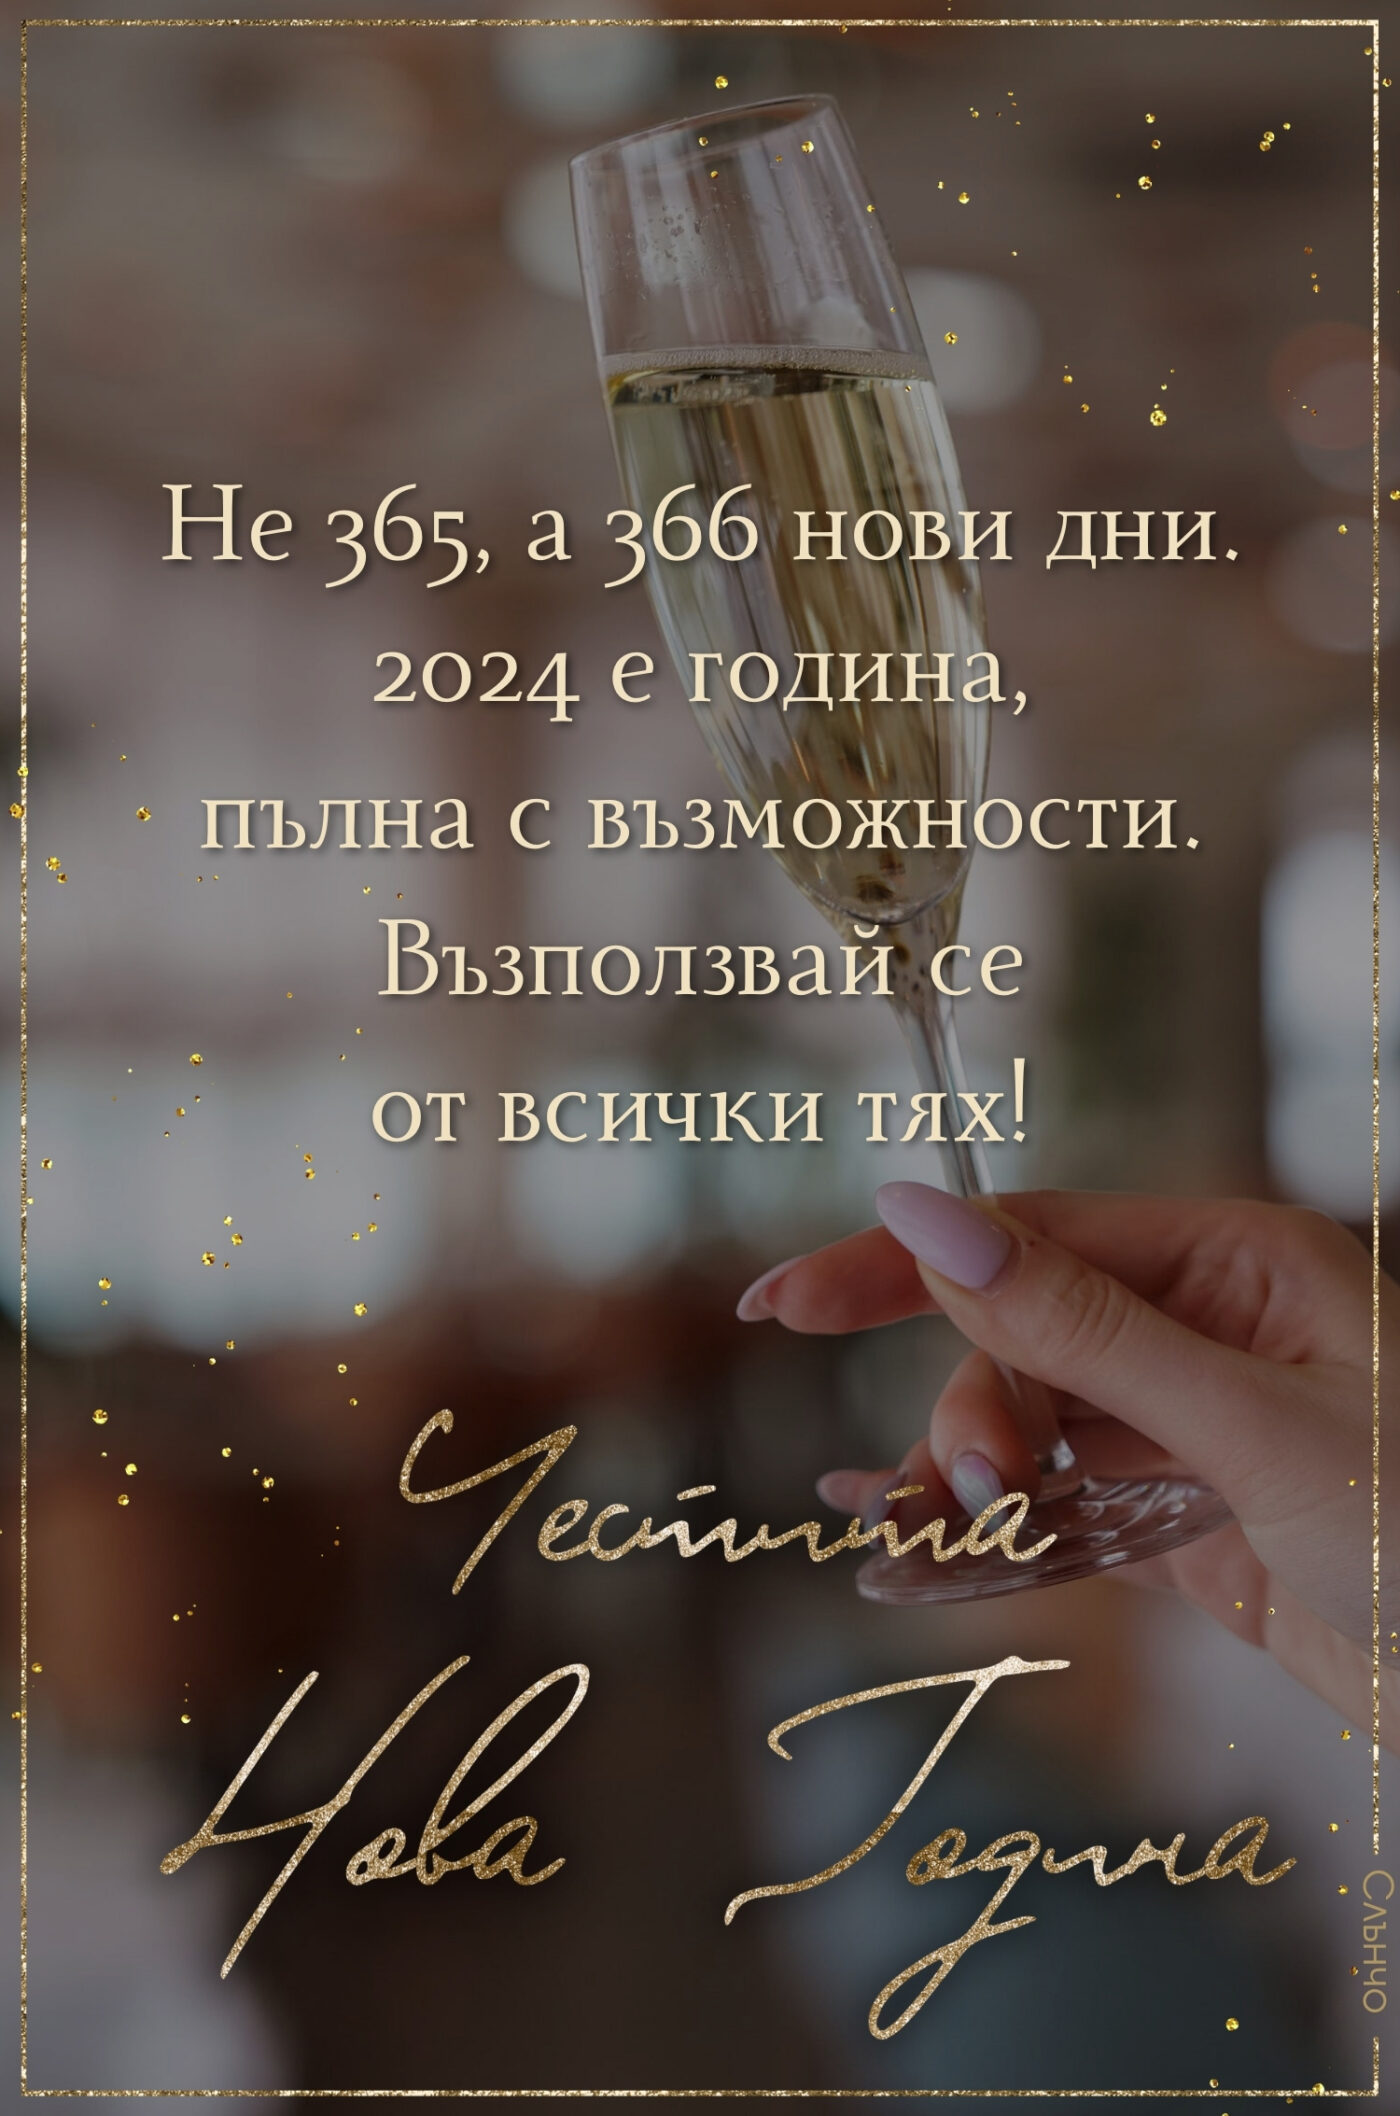 366 нови дни, Новогодишни картички за 2024, честита нова година 2024, пожелания за Нова година, наздраве, за много години, оригинални новогодишни пожелания, високосна година, 2024